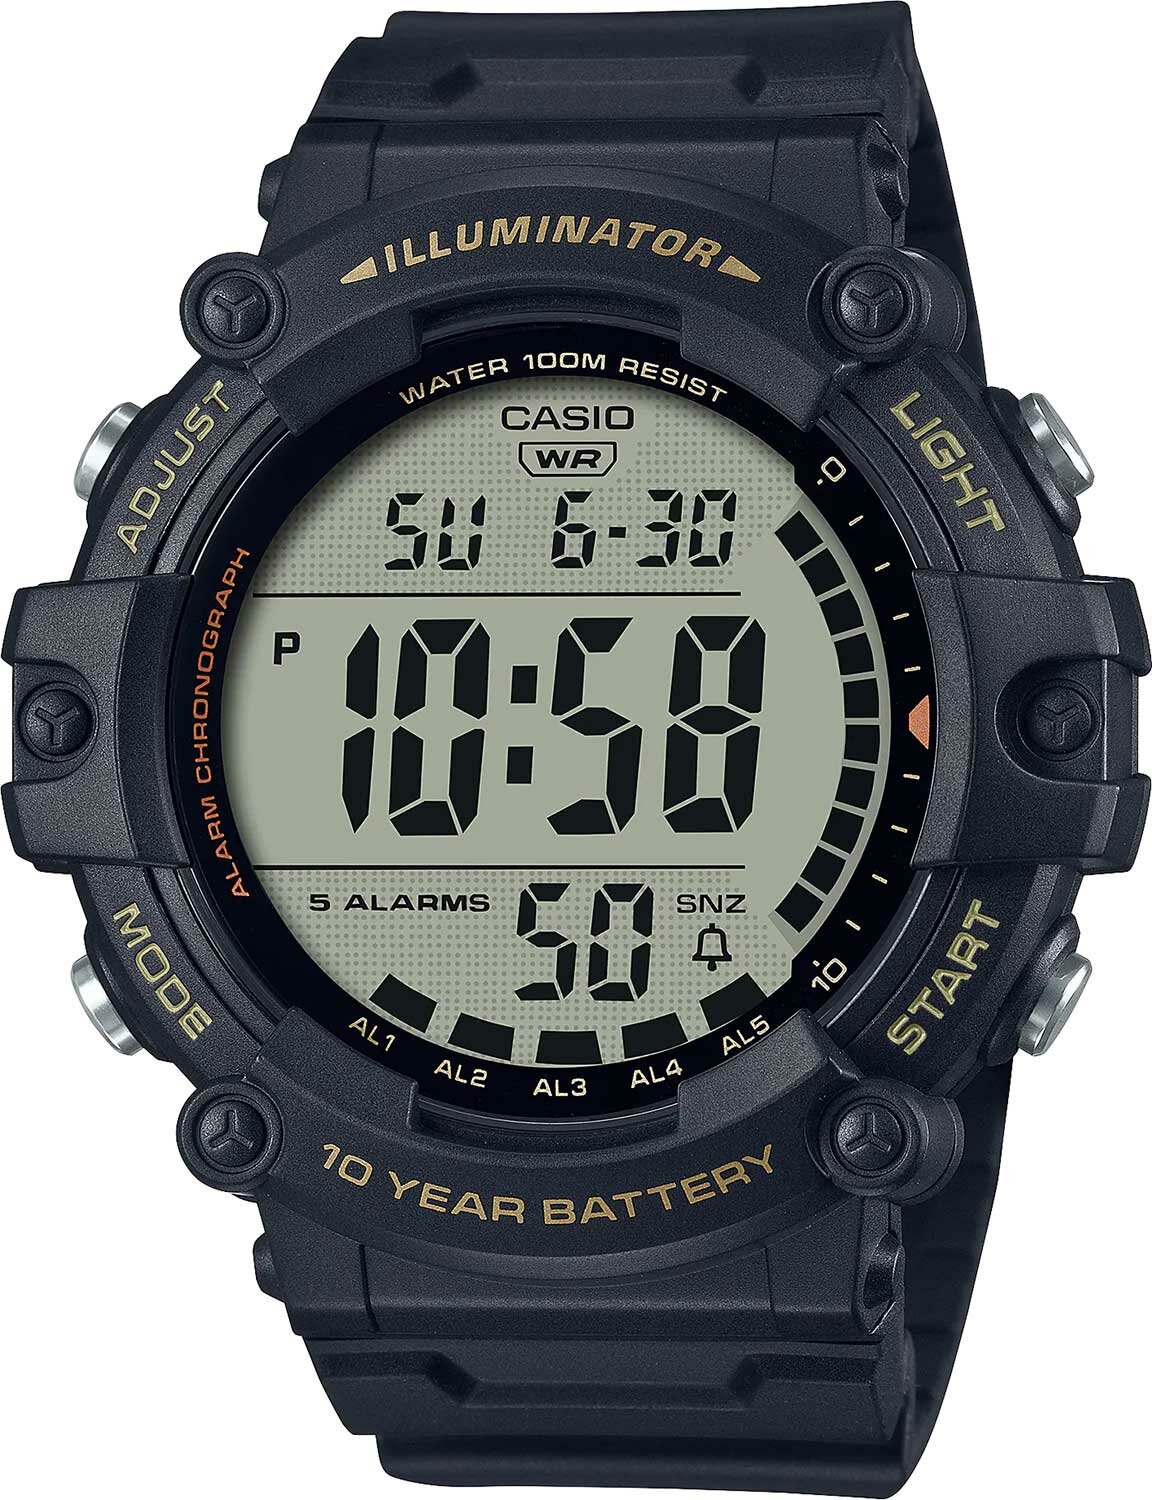 Наручные часы AE-1500WHX-1